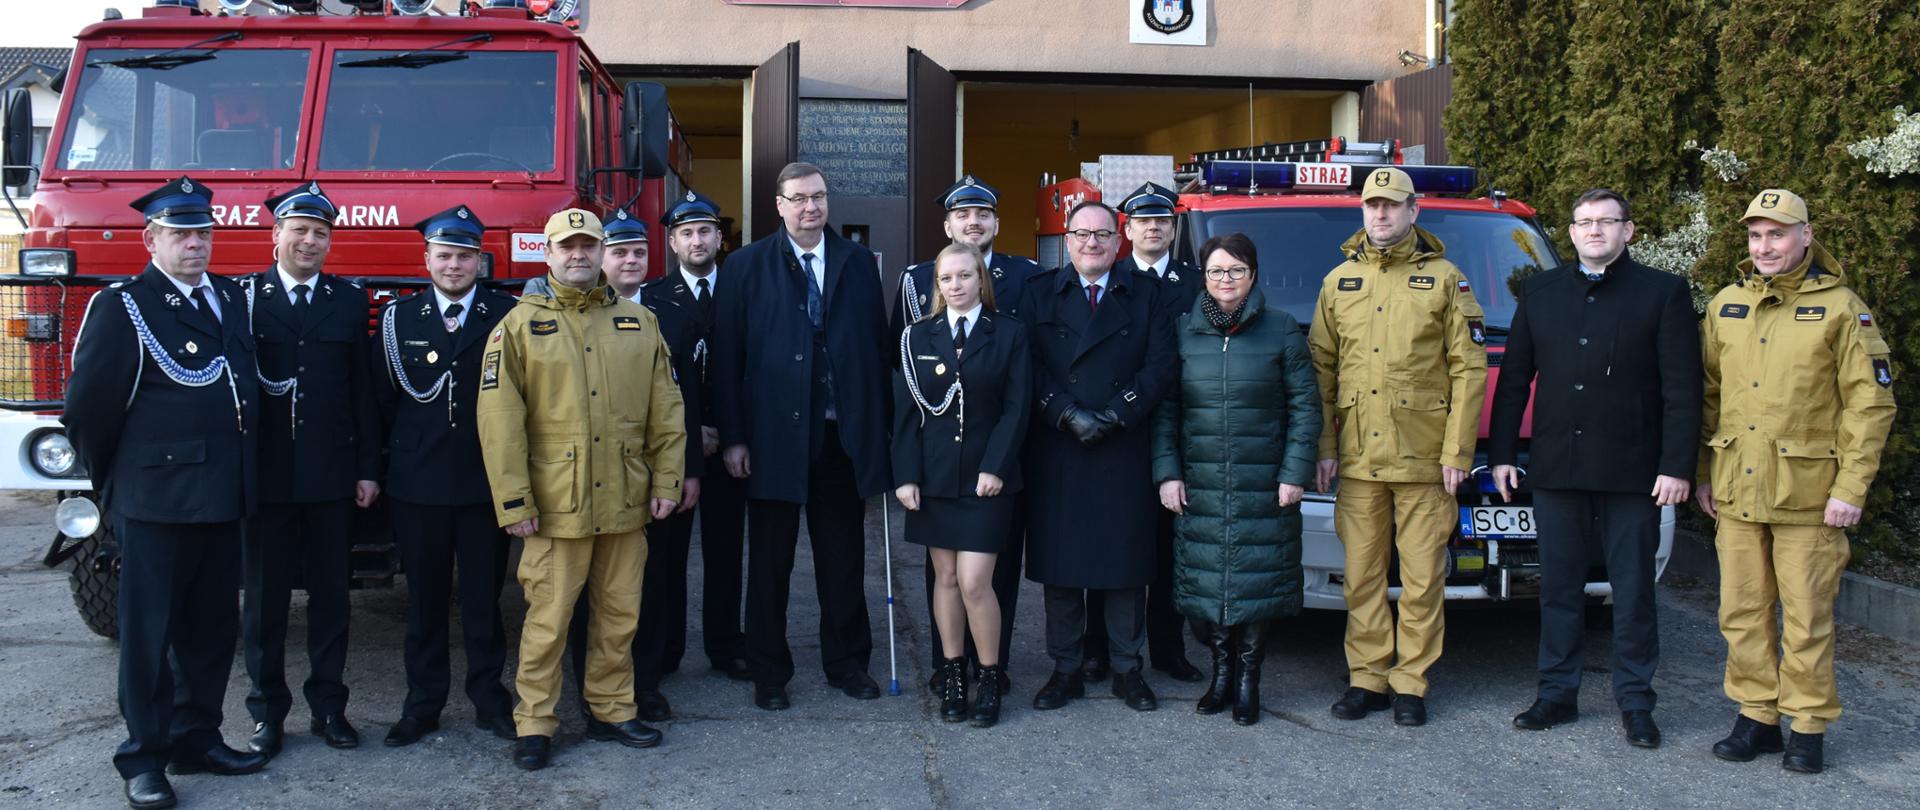 Wizyta Śląskiego Komendanta Wojewódzkiego PSP w Ochotniczej Straży Pożarnej Częstochowa Kuźnica Marianowa